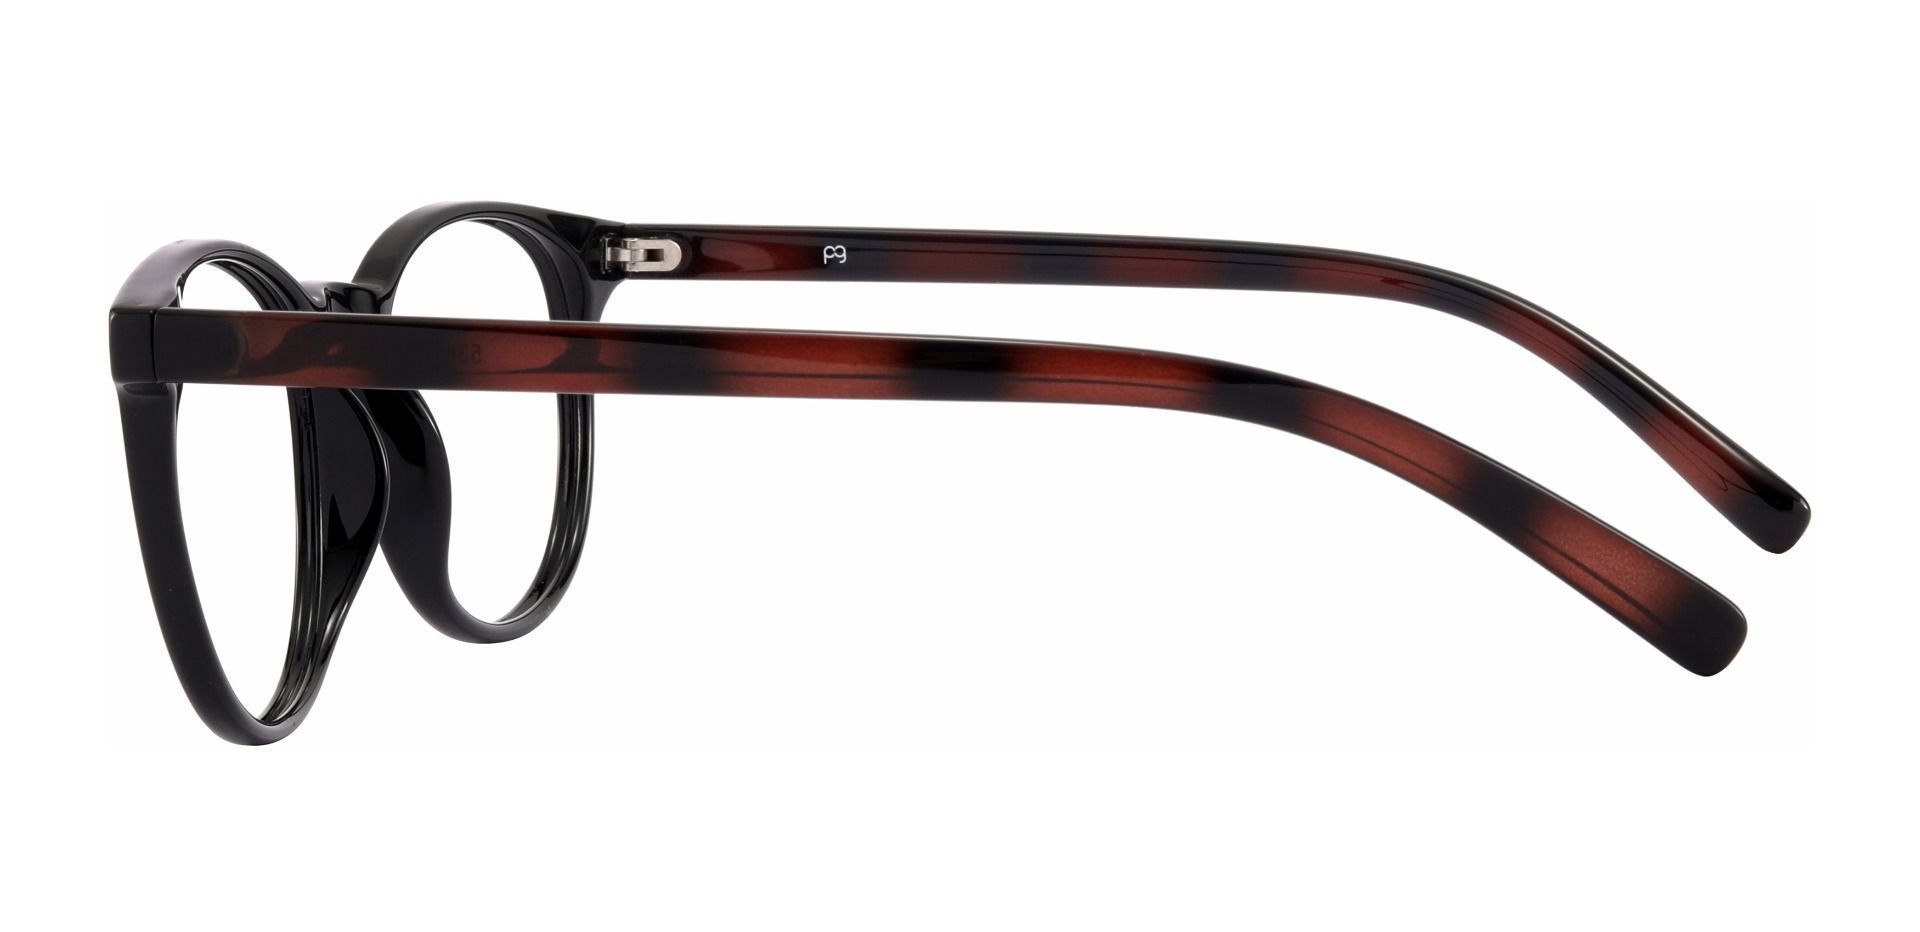 Corbett Oval Non-Rx Glasses - Black